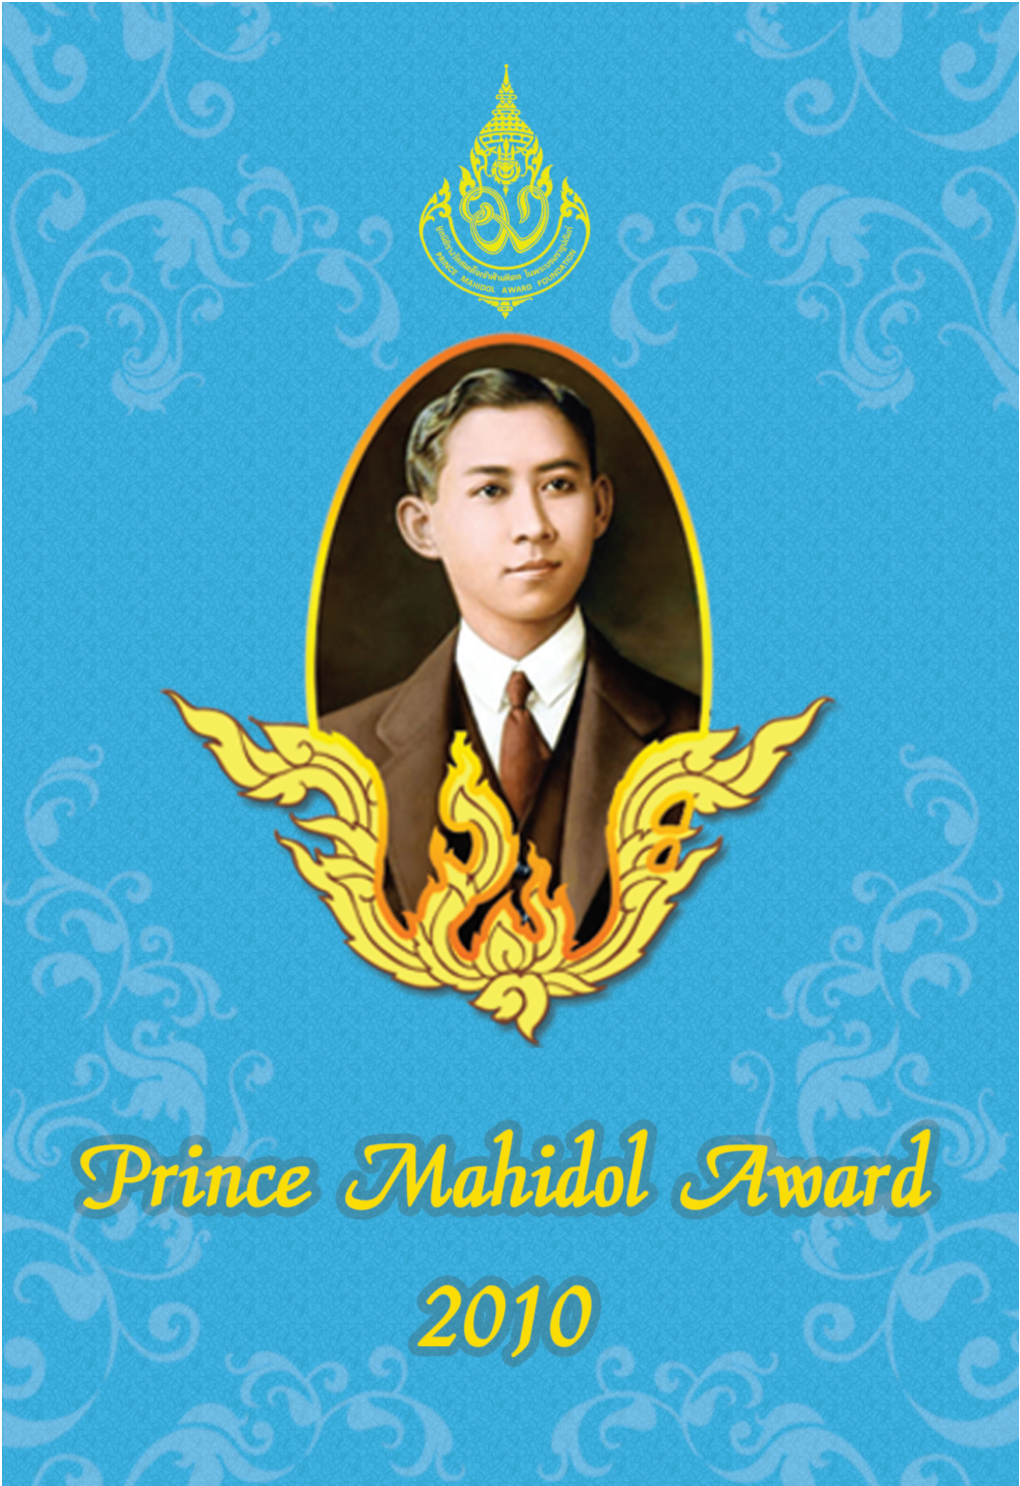 Prince Mahidol Award Conference 2010